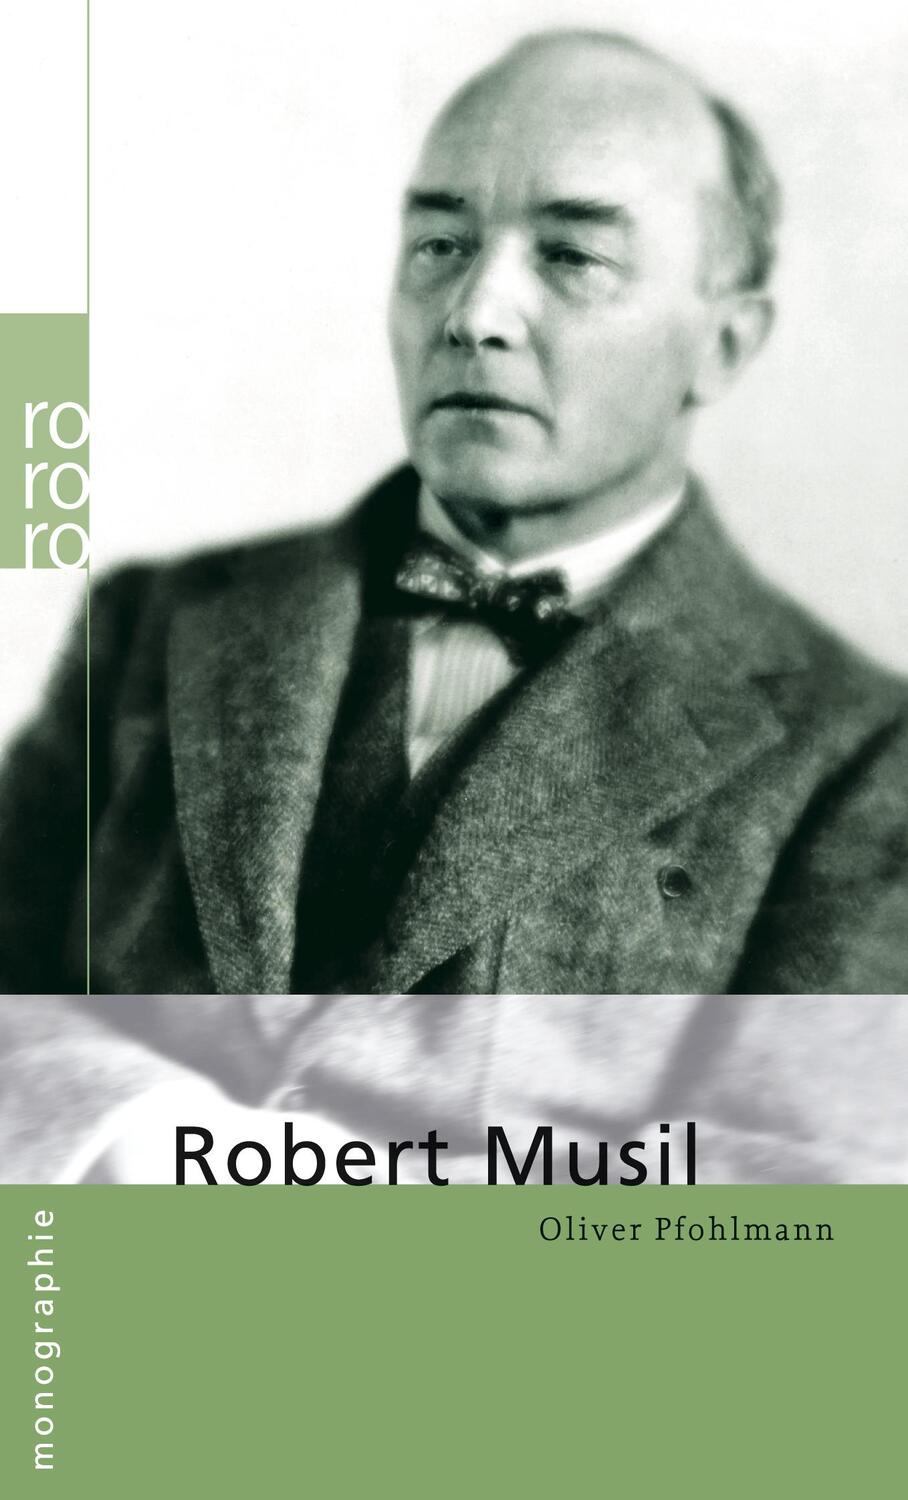 Robert Musil - Pfohlmann, Oliver